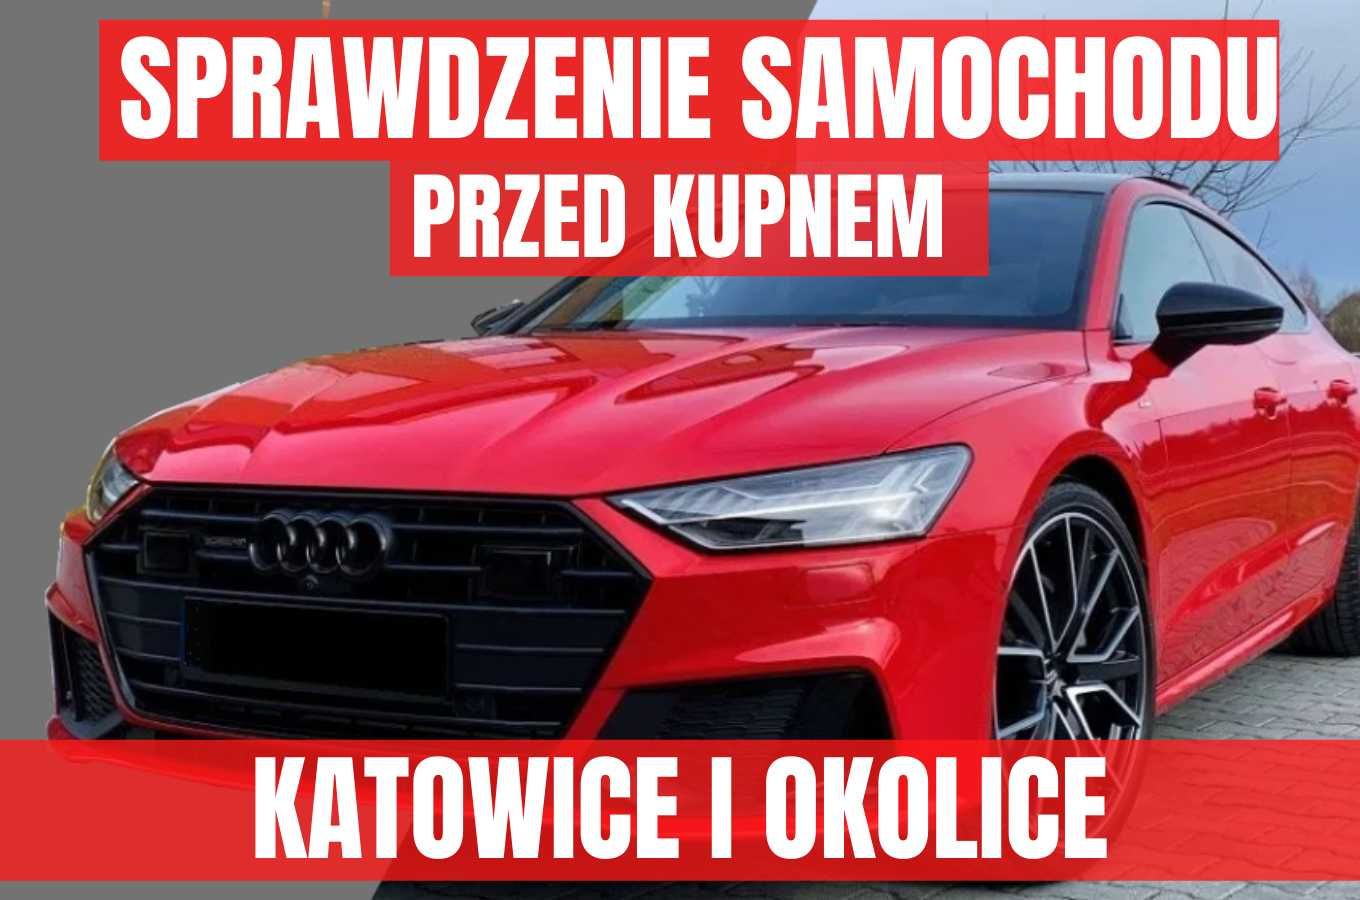 Sprawdzenie samochodu przed zakupem - Katowice, Tychy, Gliwice, Żory